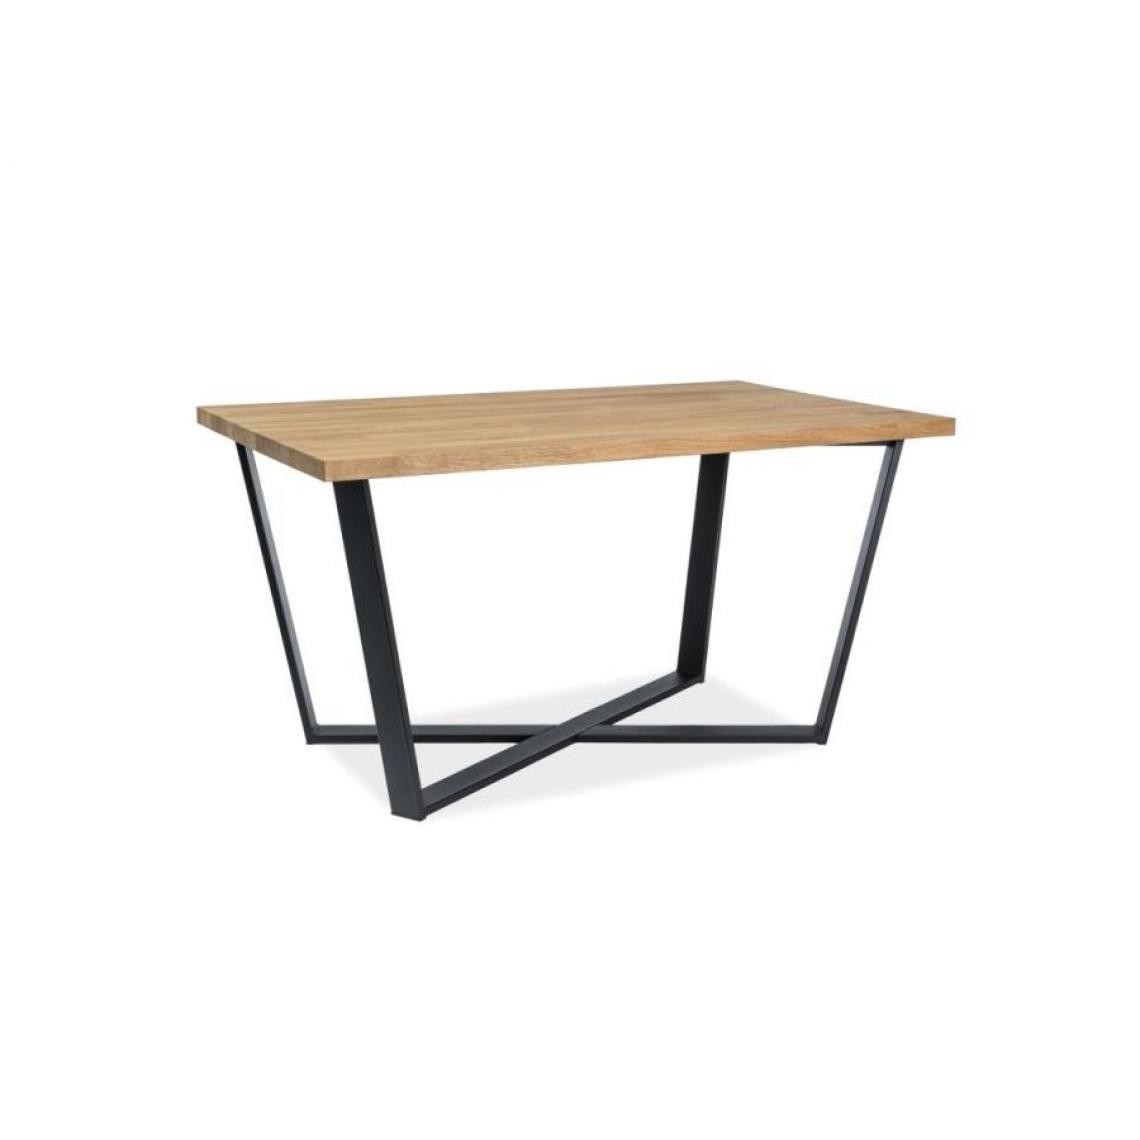 Hucoco - MARCENNO - Table design de style loft - 150x90x78 cm - Plateau en bois massif - Piètement en métal - Table fixe - Chêne - Tables à manger